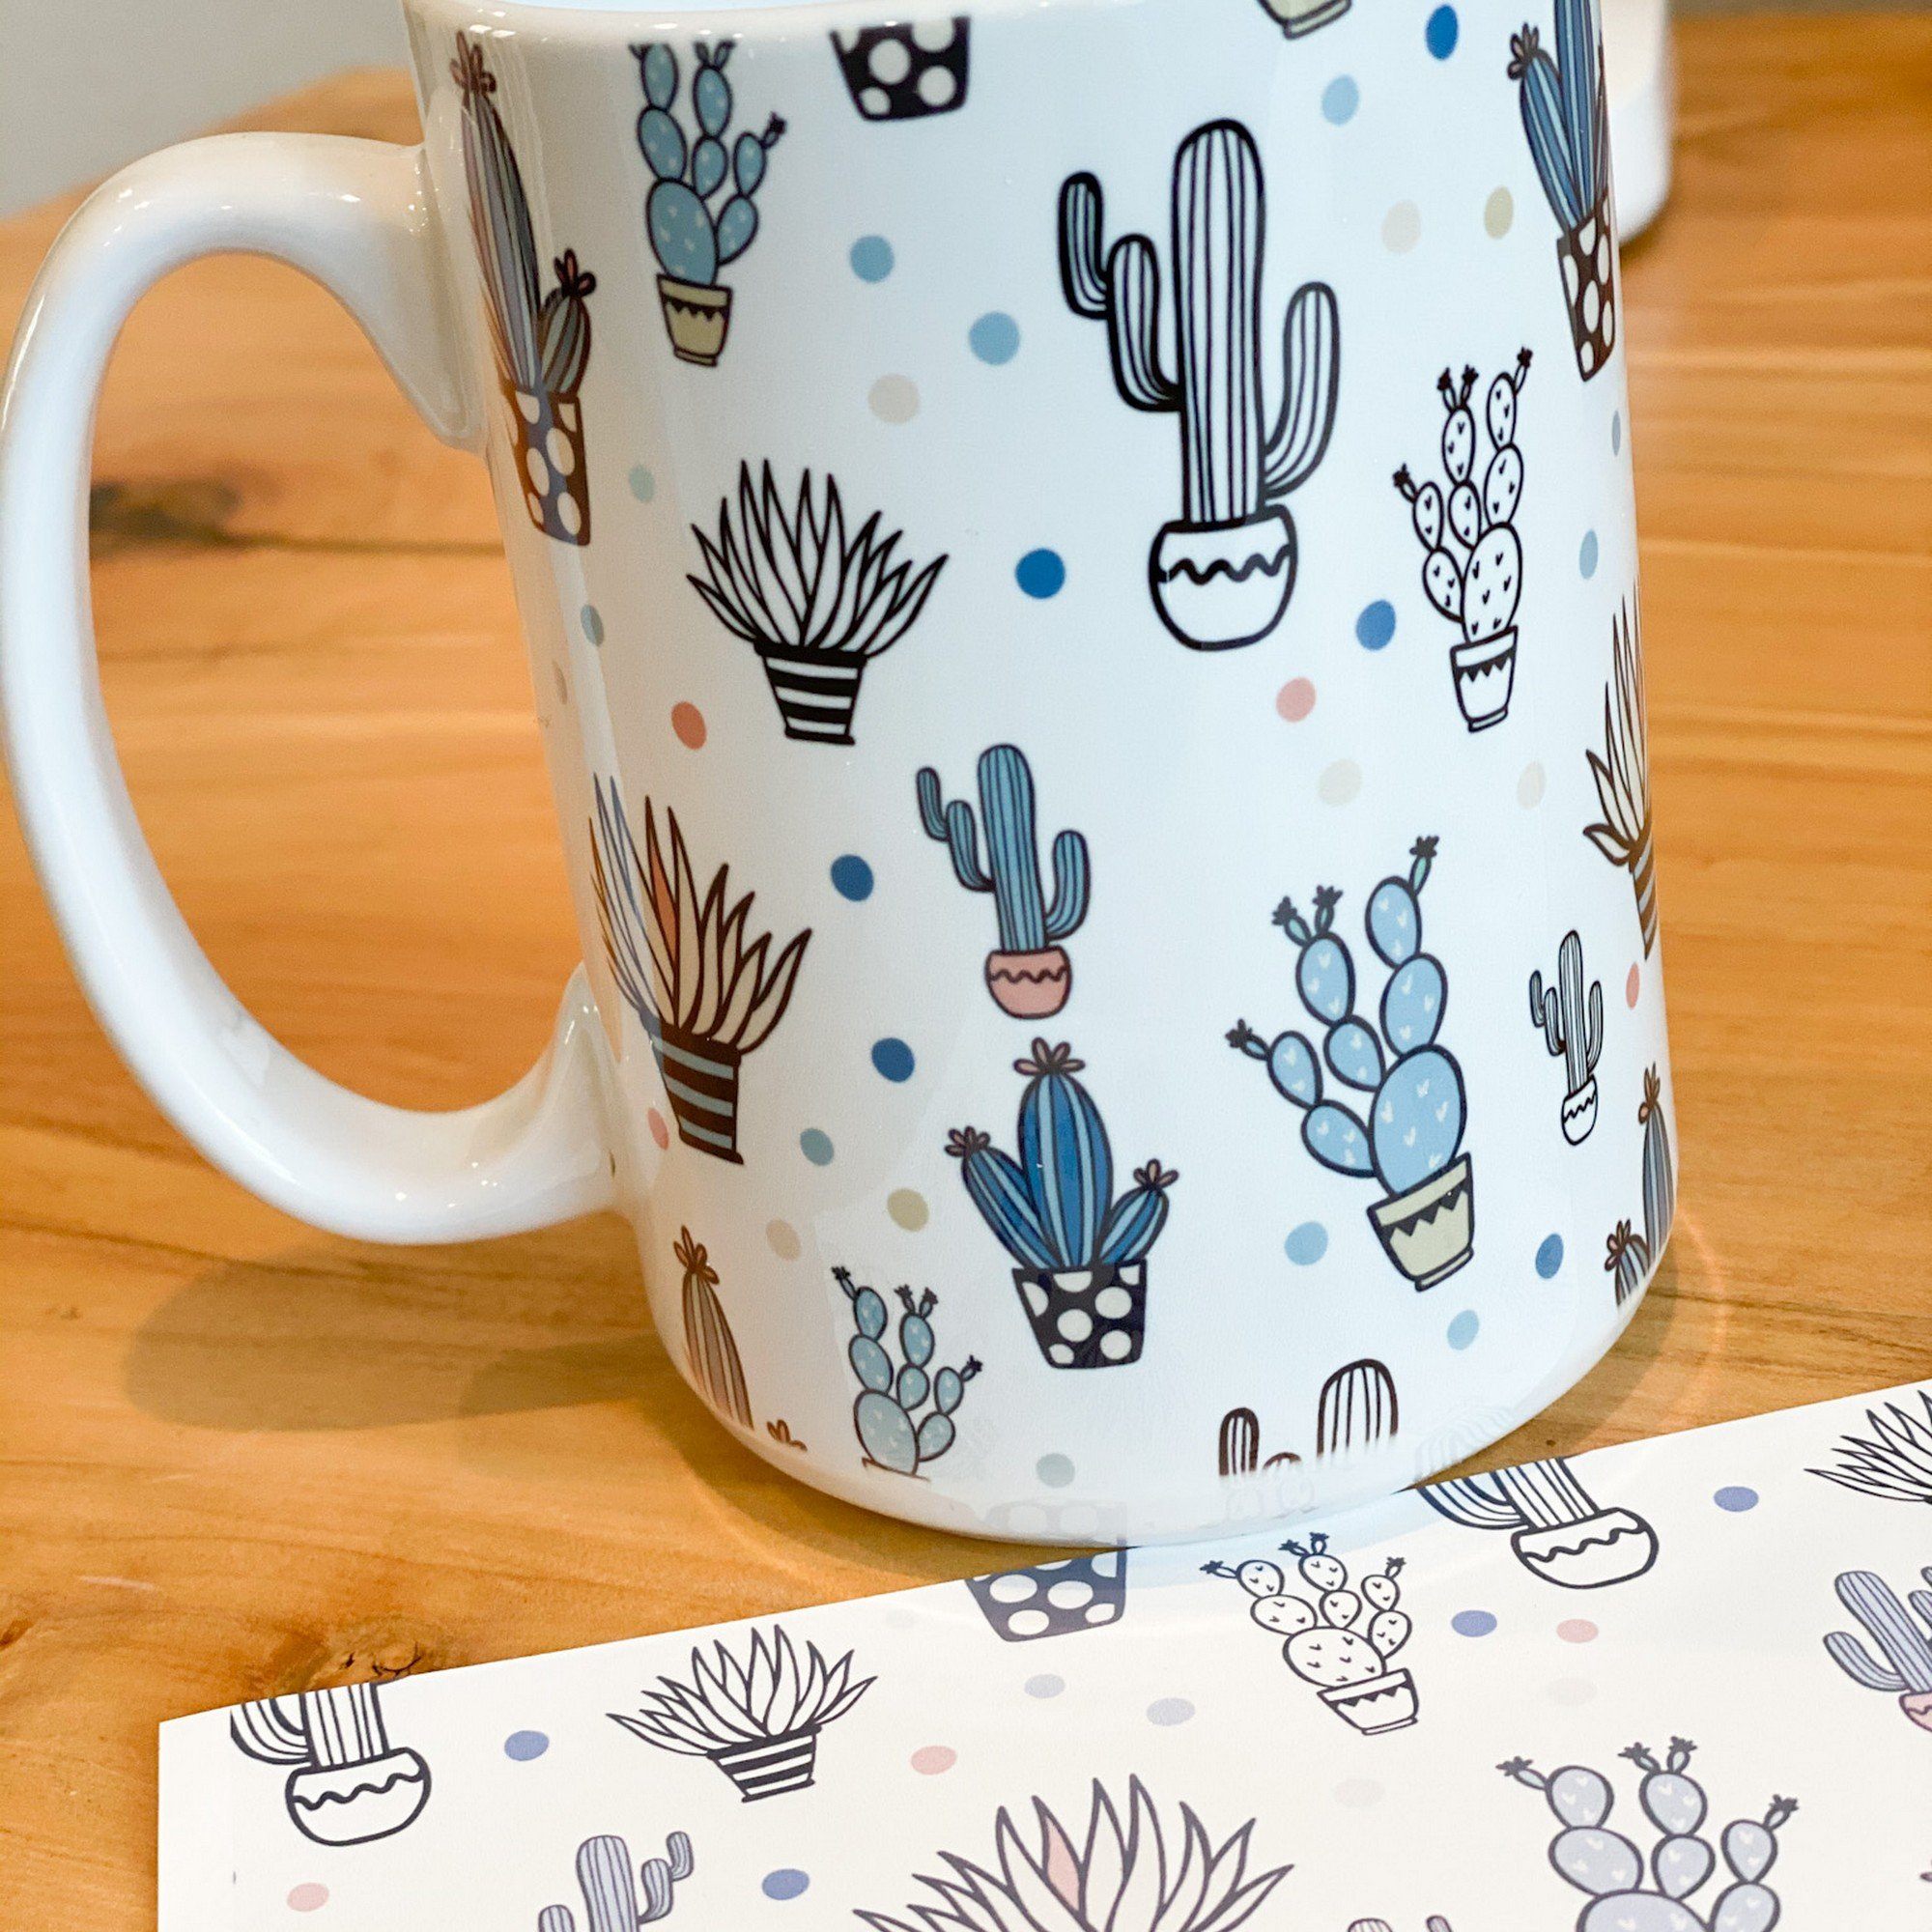 11 oz Porcelain Sublimation Mugs- Case of 36 Mugs: Coffee Cups  & Mugs